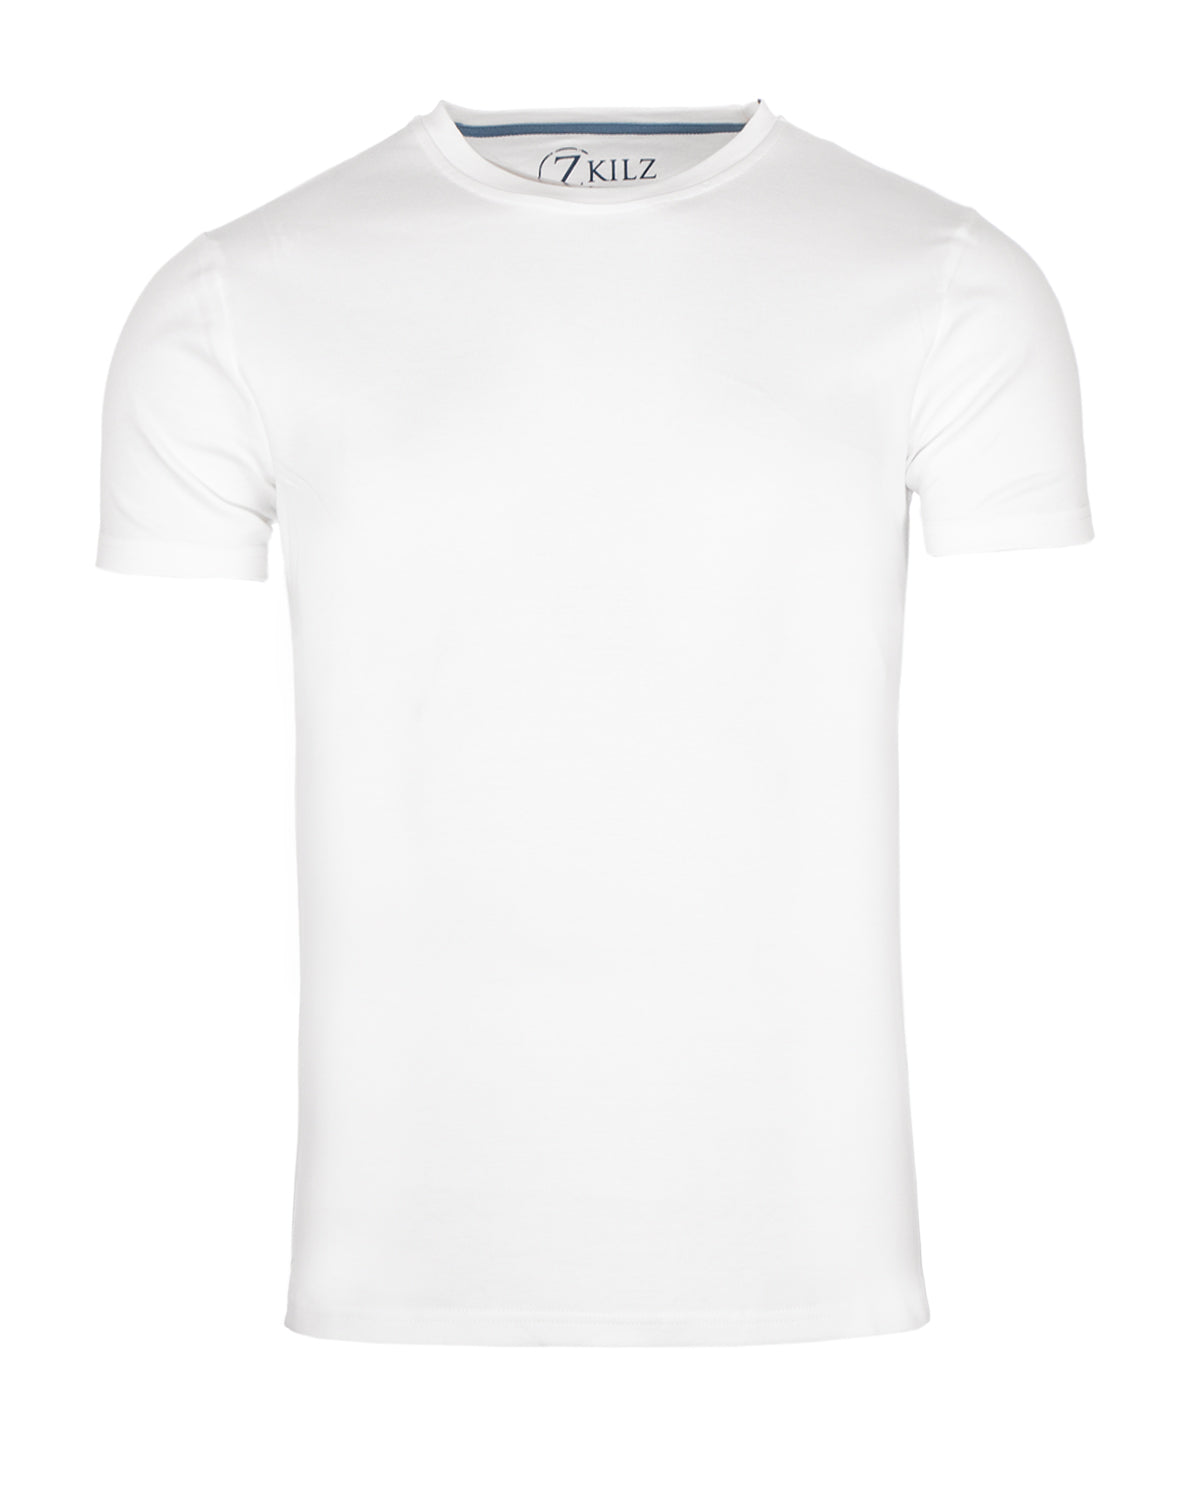 Zkilz Eco Clothing Luomupuuvilla t-paita - Valkoinen